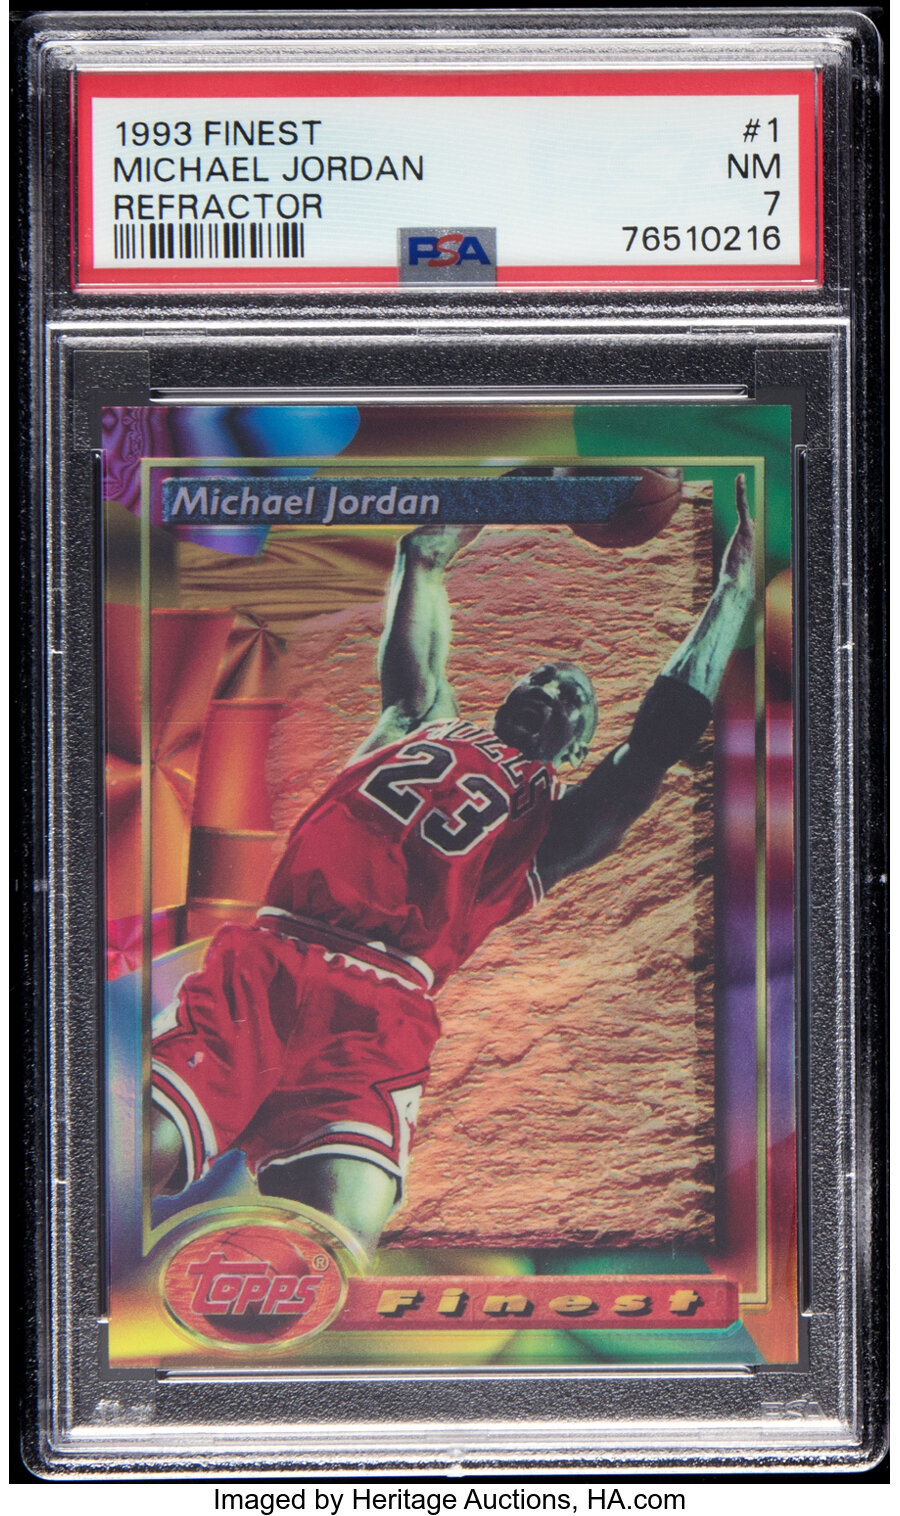 1993 Topps Finest Michael Jordan (Refractor) #1 PSA NM 7